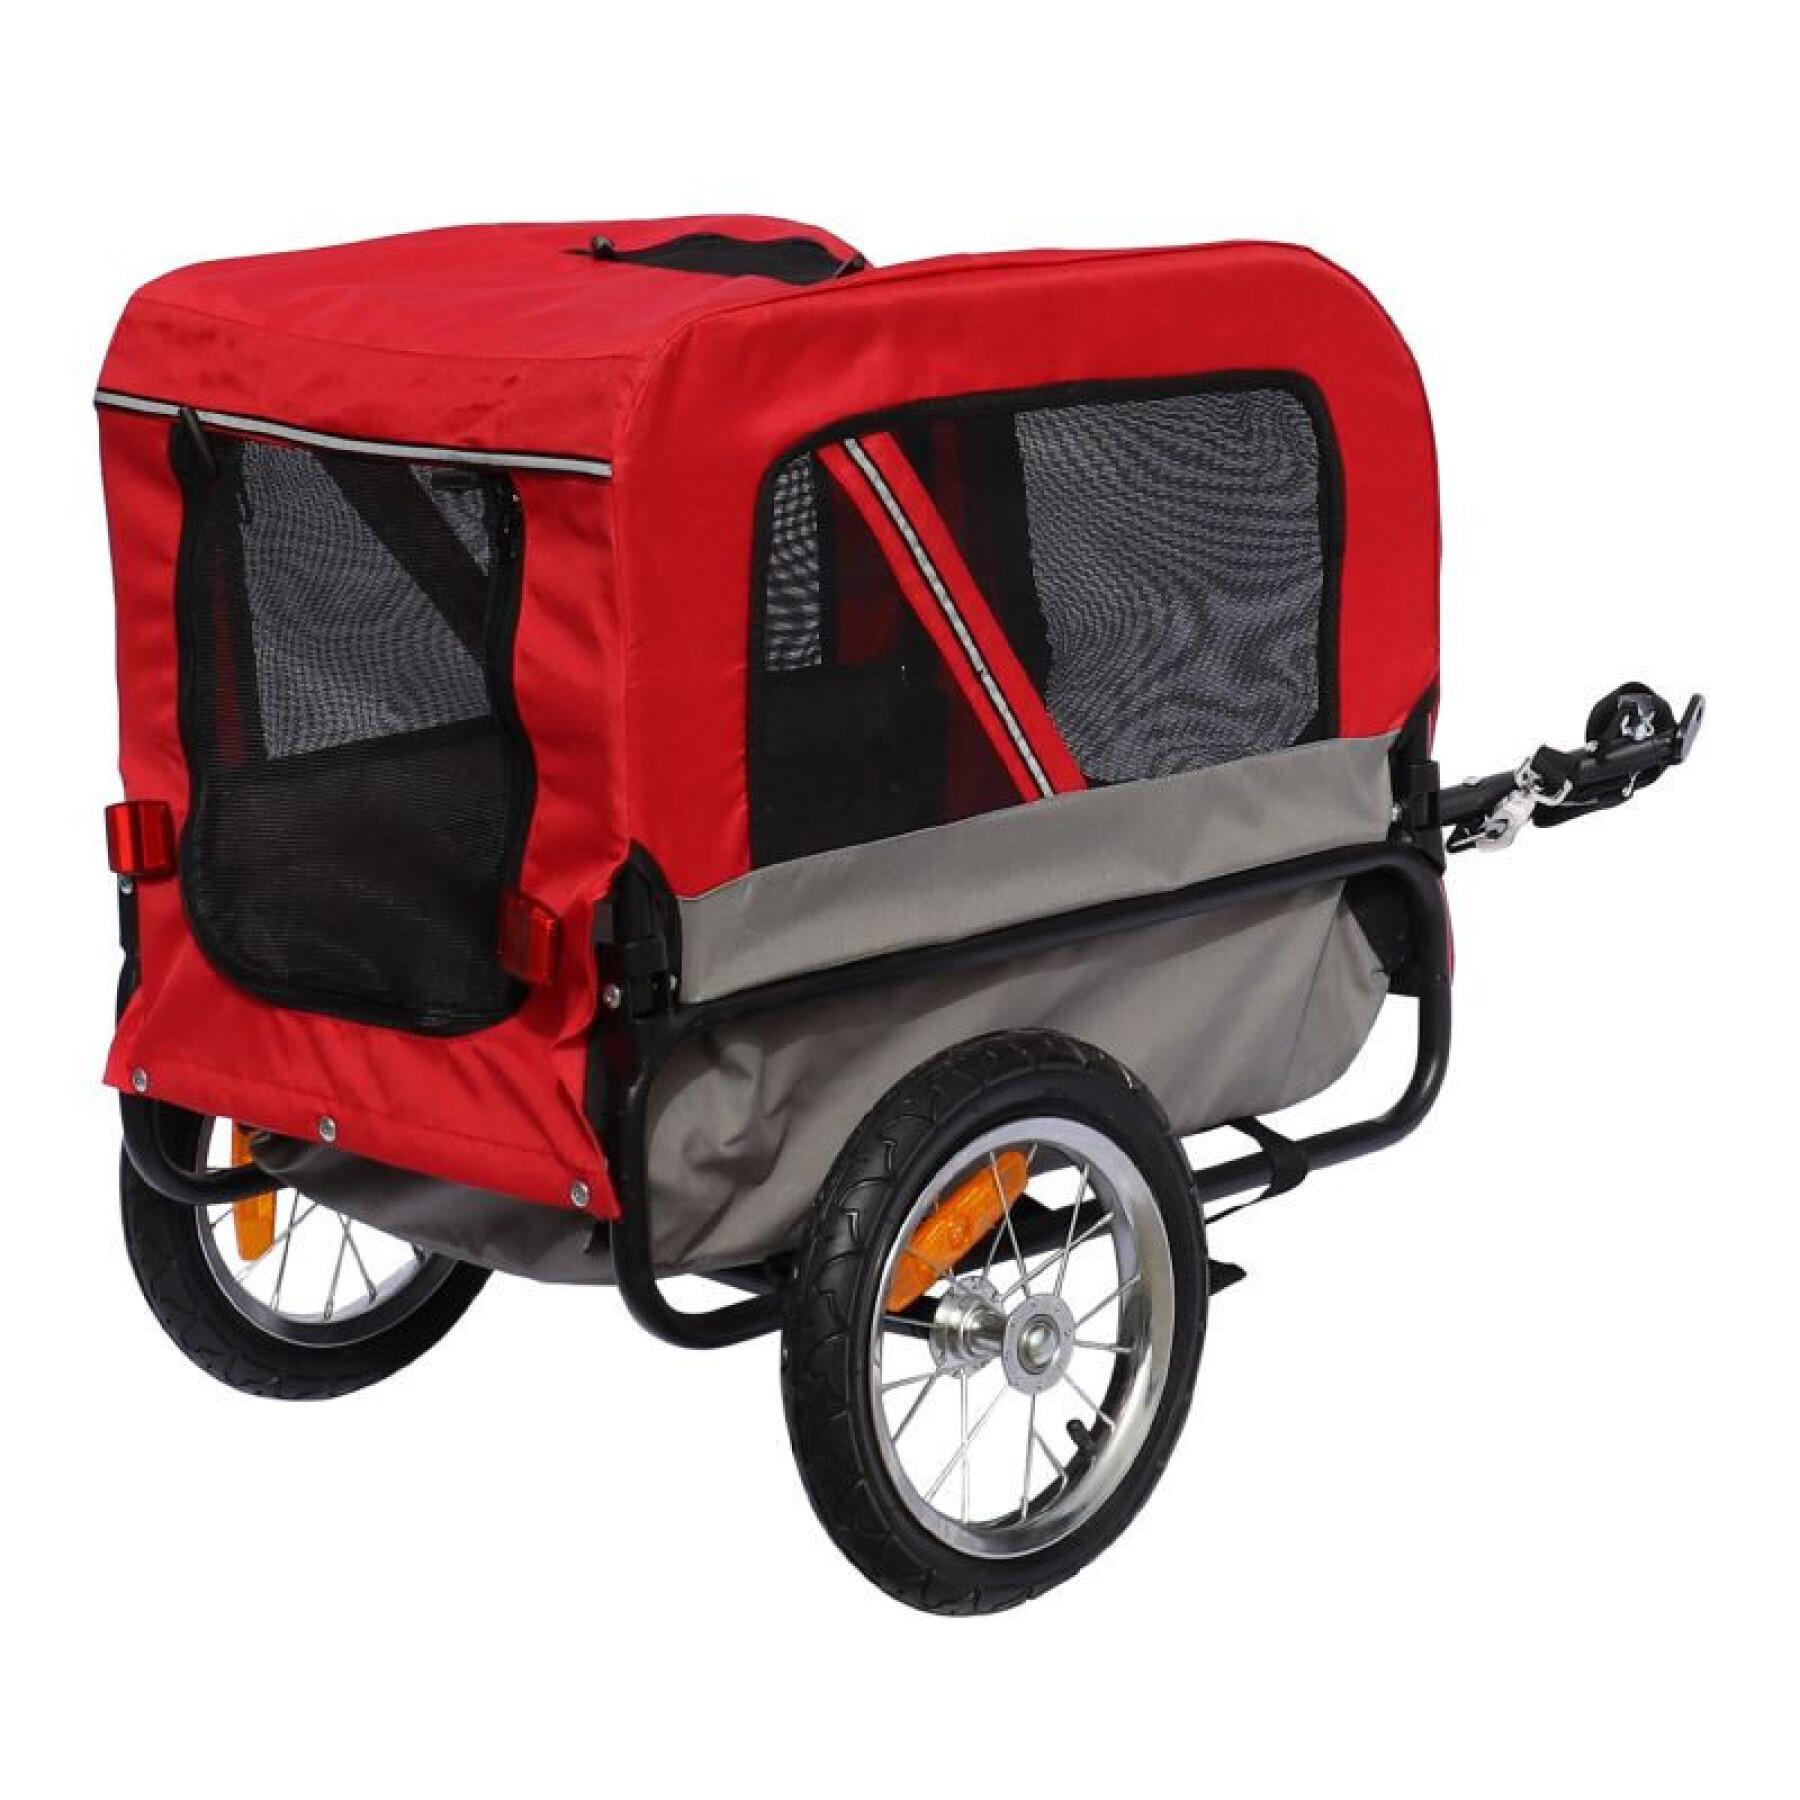 Utility-Anhänger mit Rädern, Radachsenbefestigung hinten - für den Transport von Hunden und Gepäck - 2 Öffnungen (vorne+hinten) + zusätzlicher Arm P2R Maxi